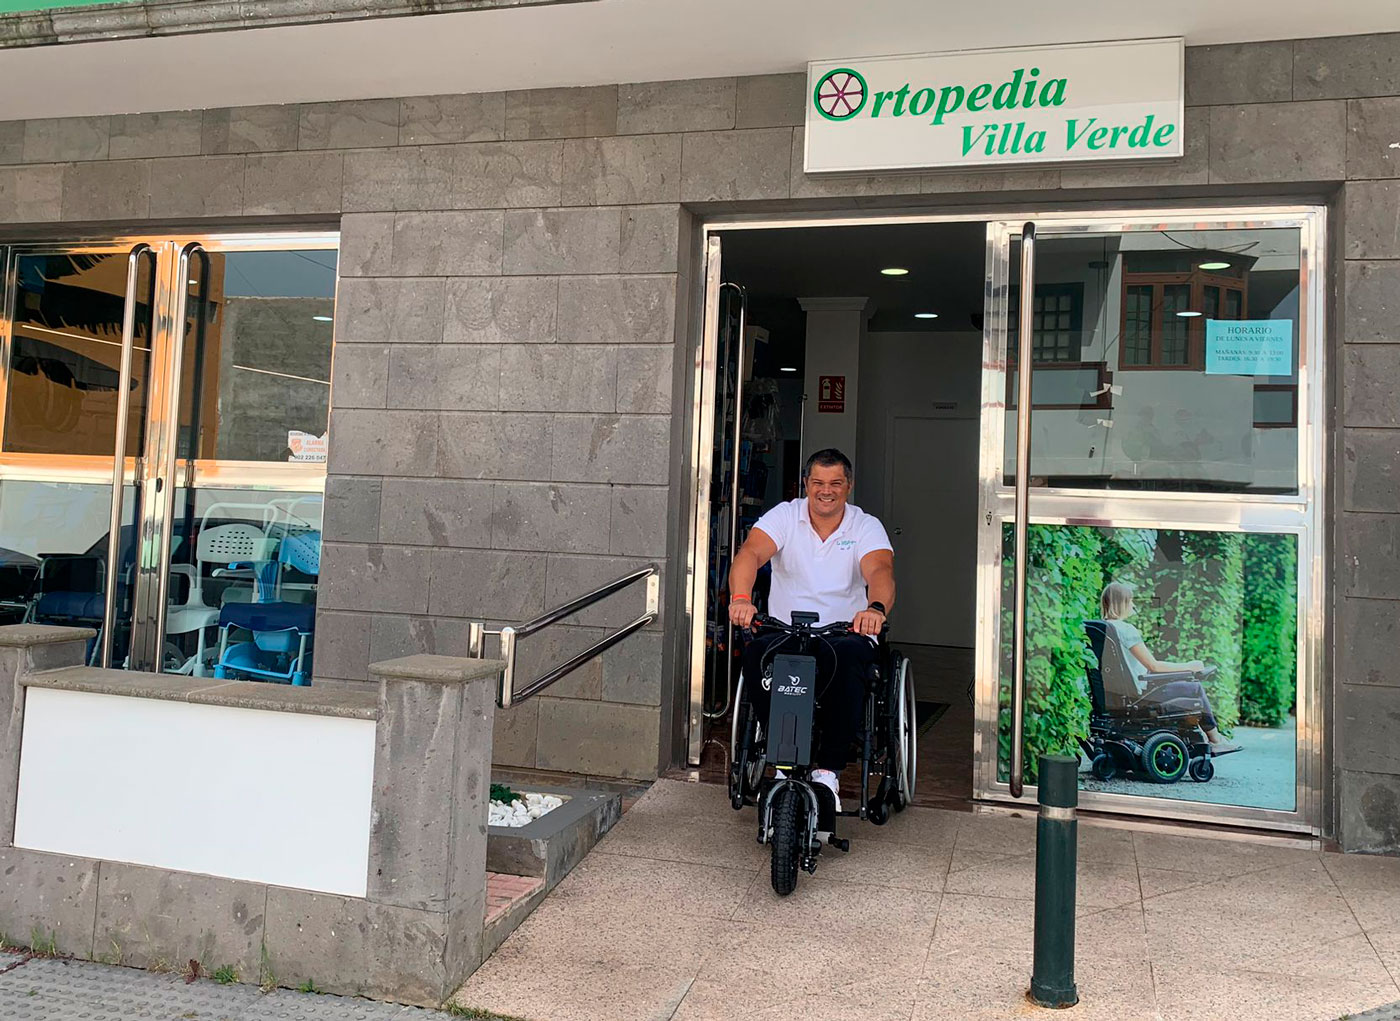 Ortopedia Villa Verde servicio oficial Batec Mobility en Las Palmas de Gran Canaria